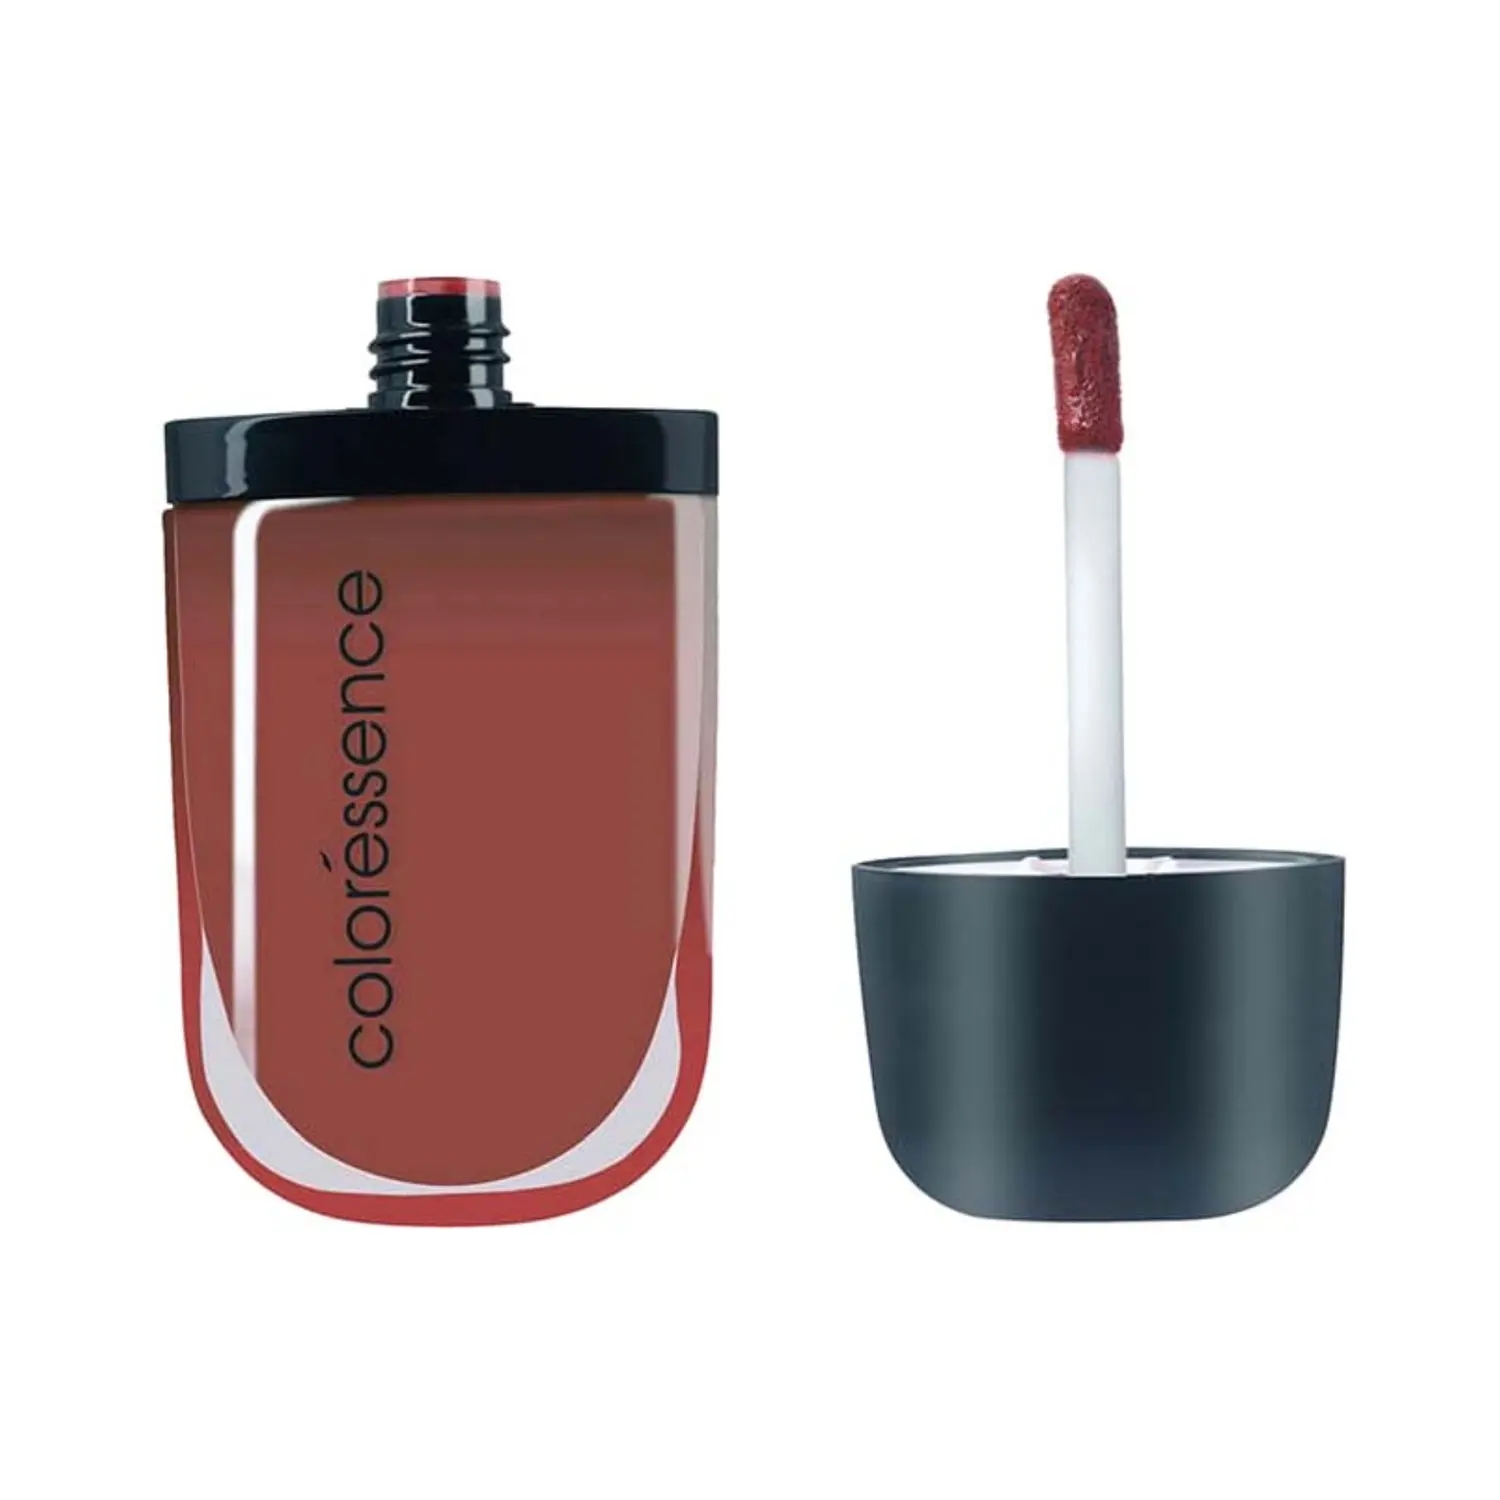 Coloressence | Coloressence Intense Soft Matte Liquid Lip Color Lipstick - Brown Pic (8ml)